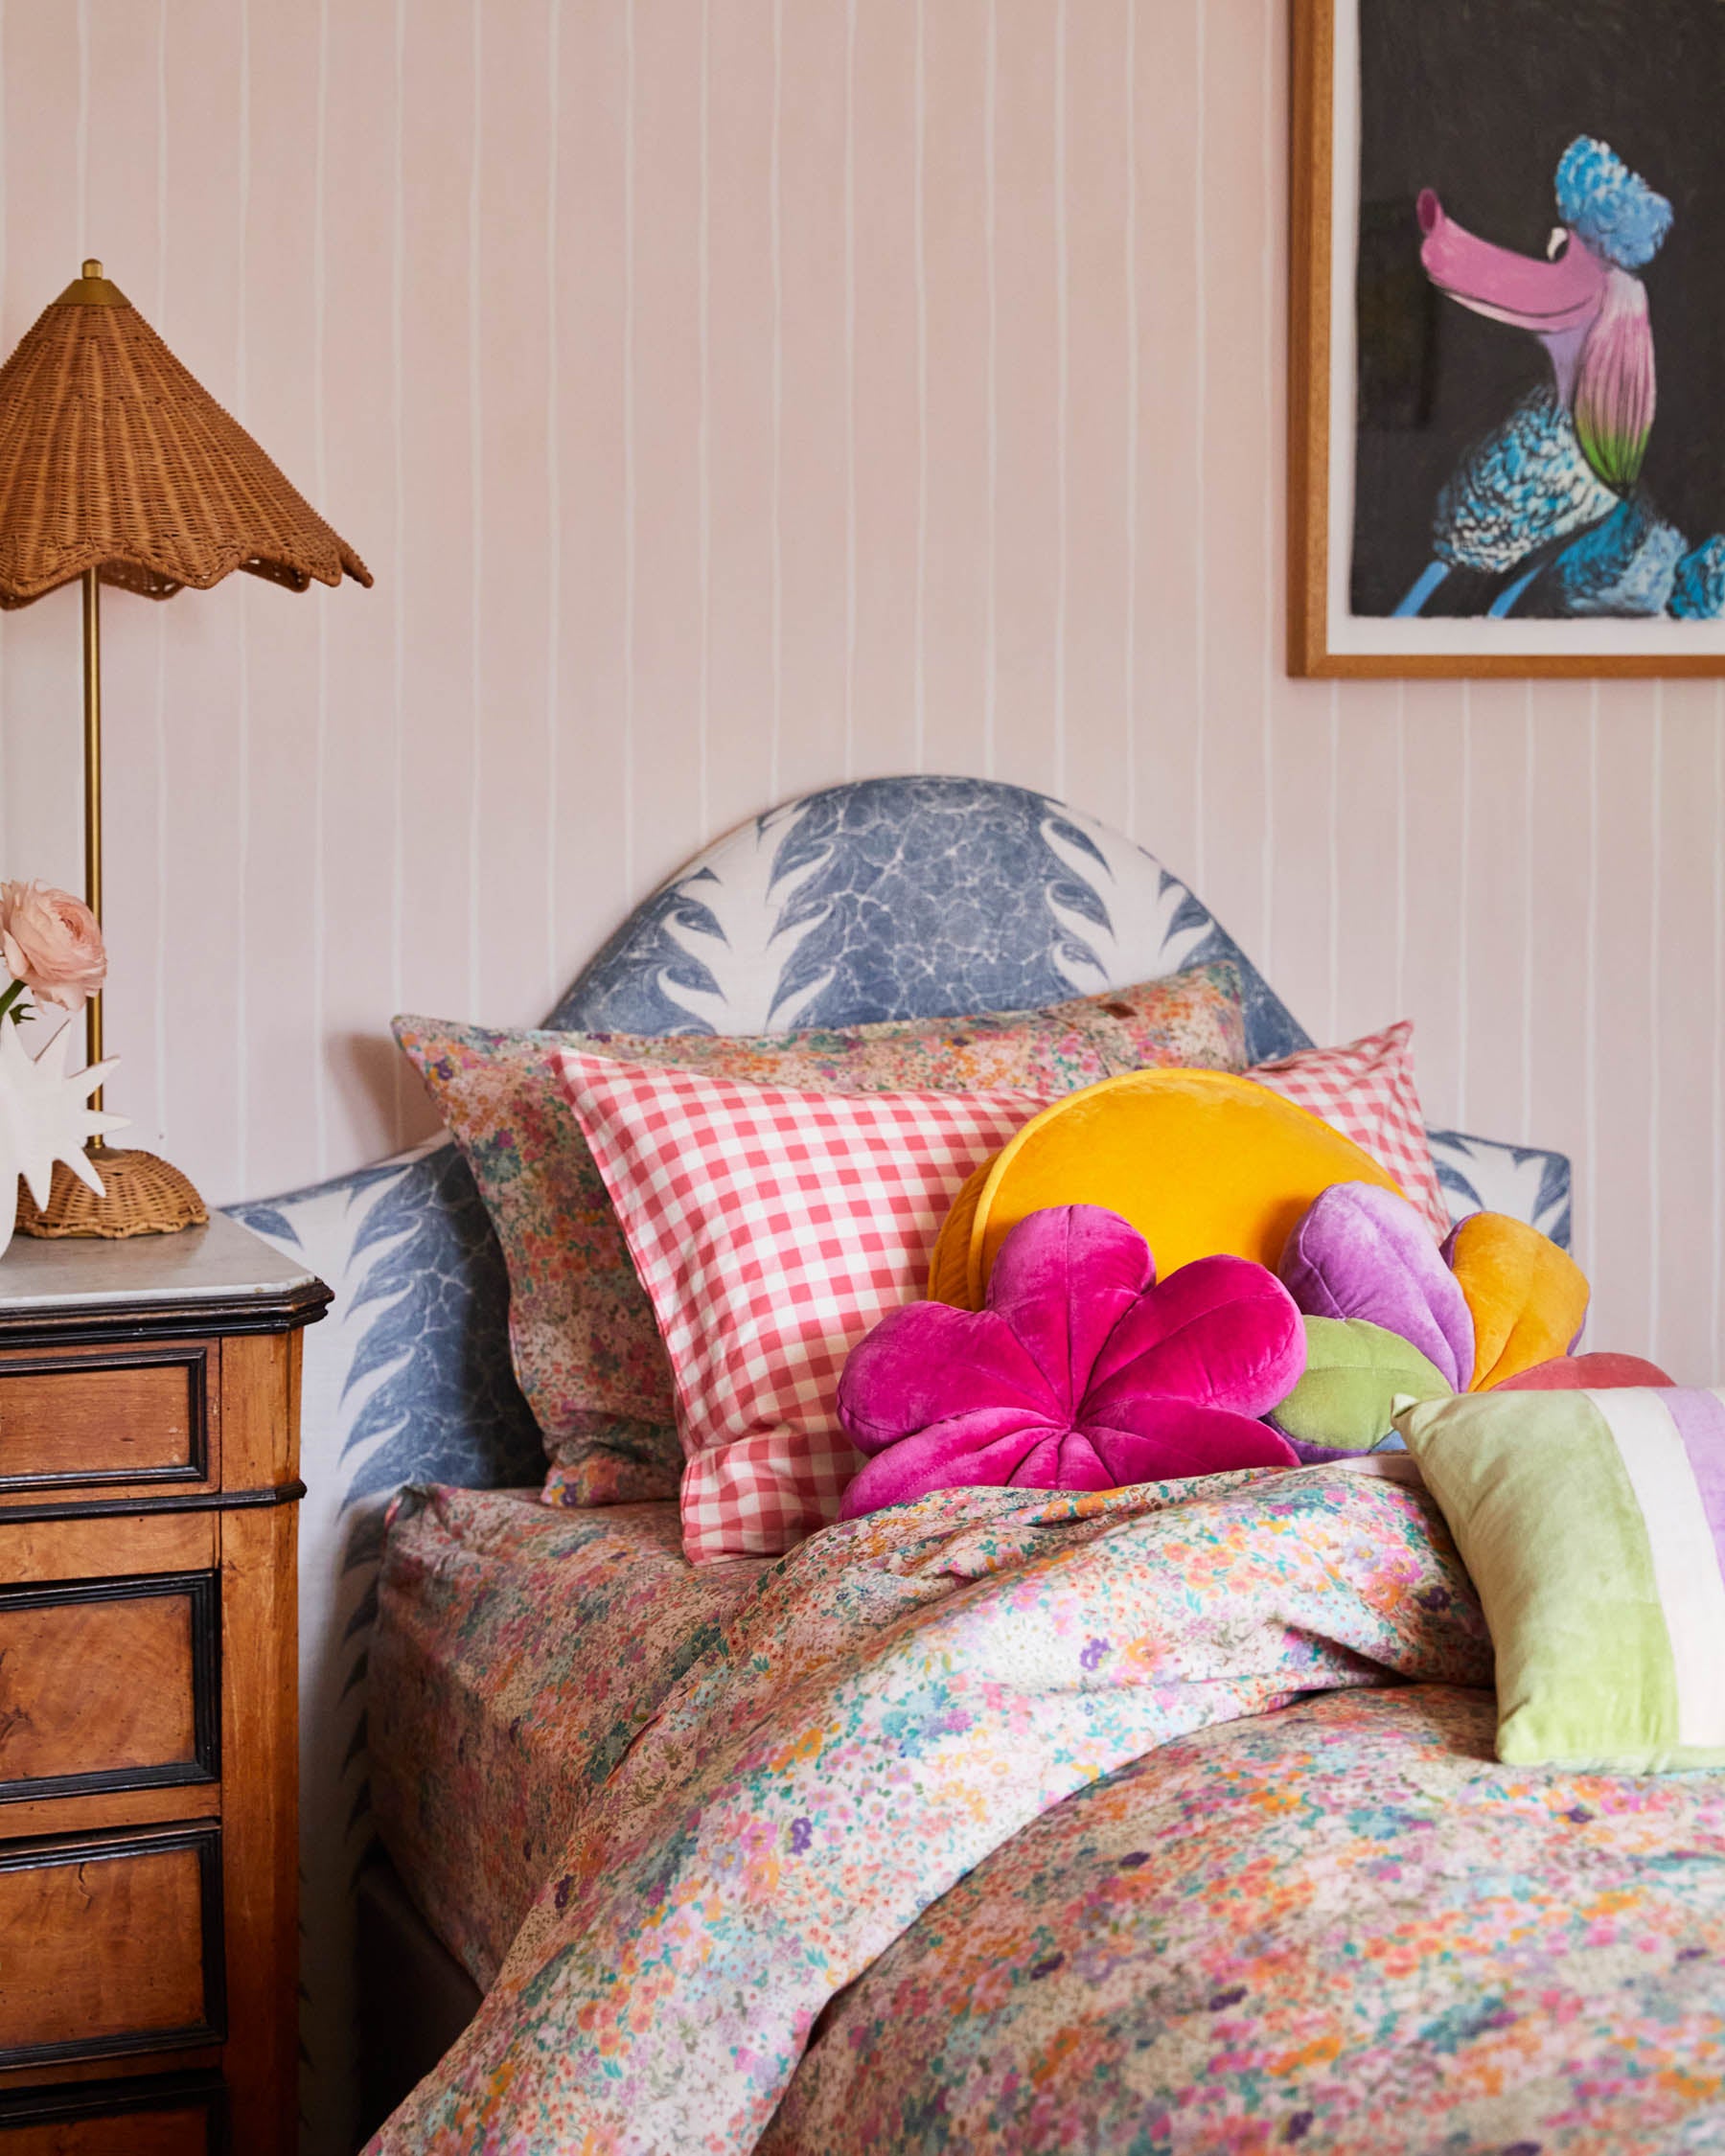 Kip & Co HOME  | Raspberry Velvet Petal Cushion